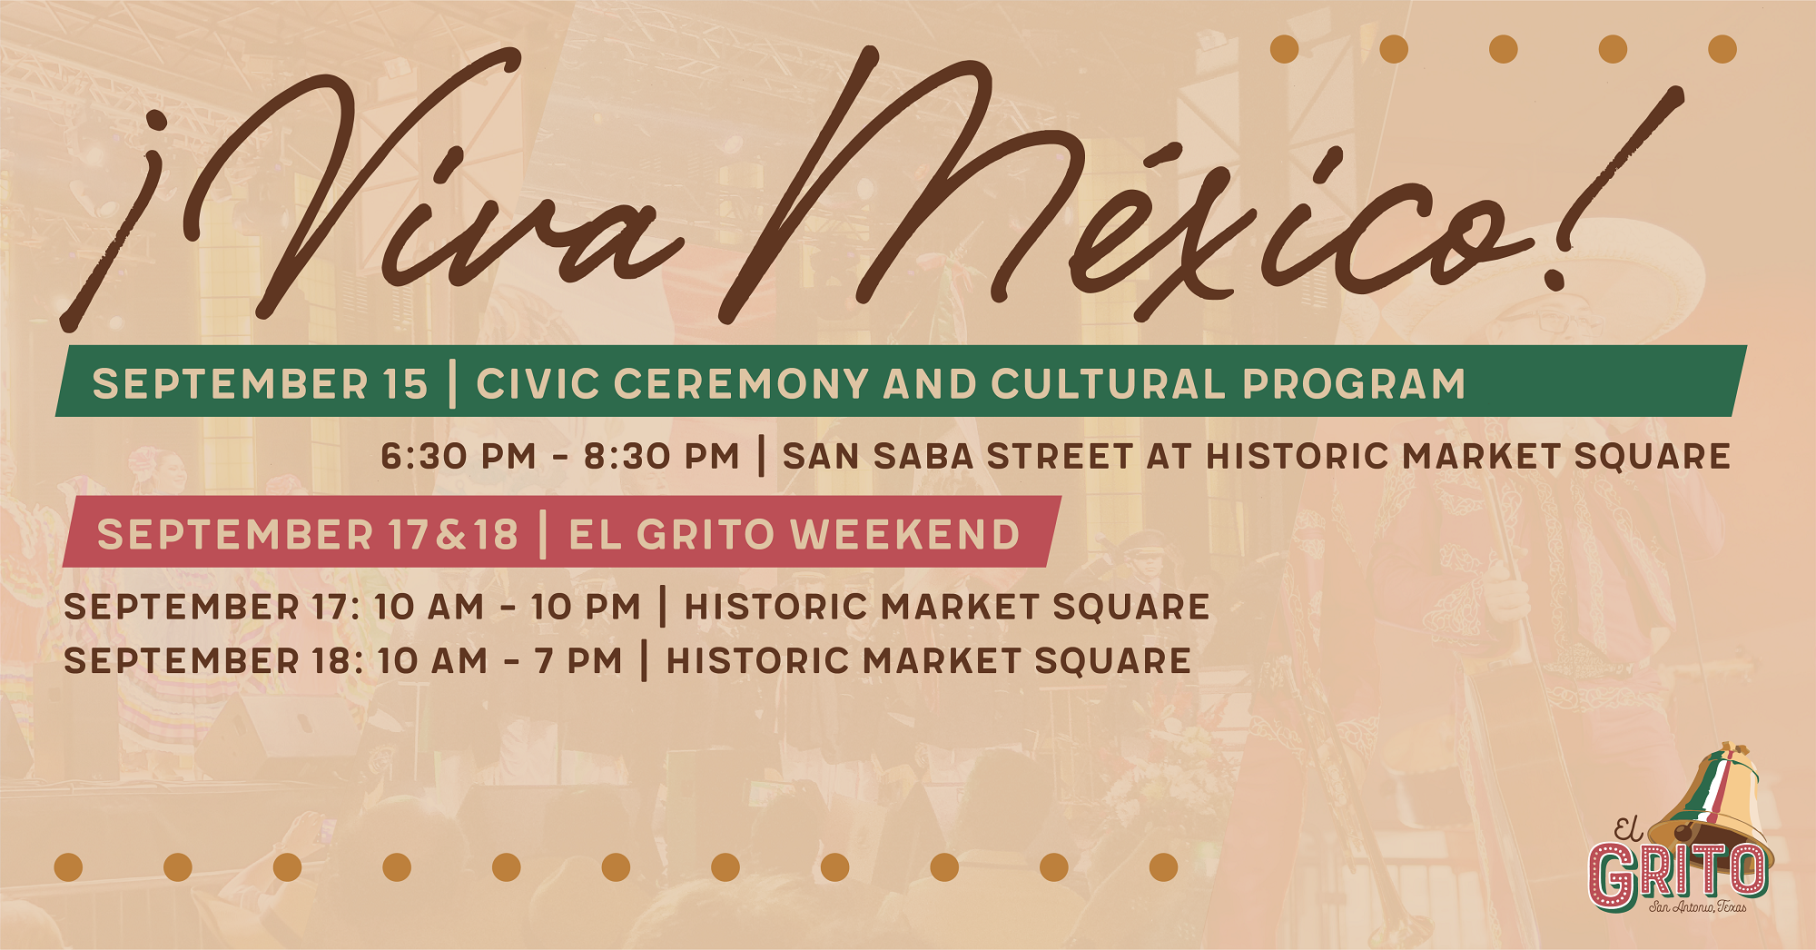 Gallery 4 - El Grito Cultural Program and Civic Ceremony